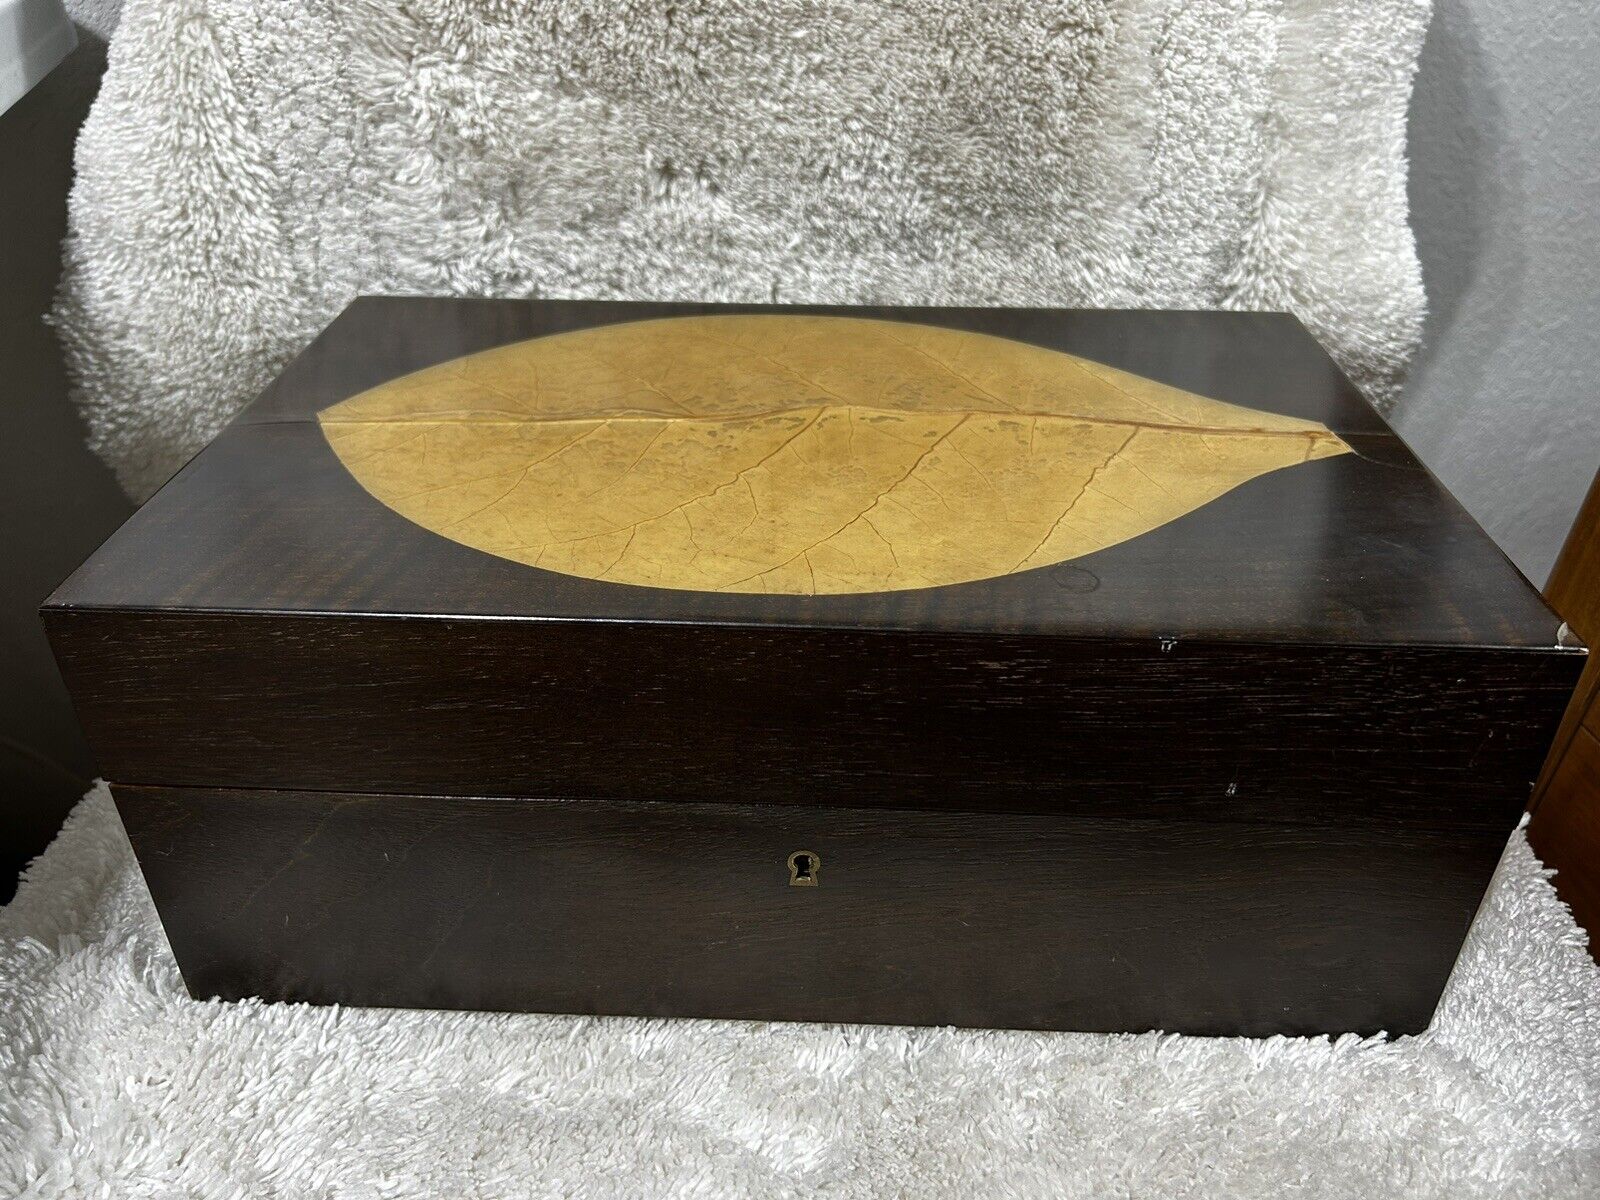 Vintage Zino Davidoff Cigar Humidor Lacquered Wood Box w/Lock & Key, Handles